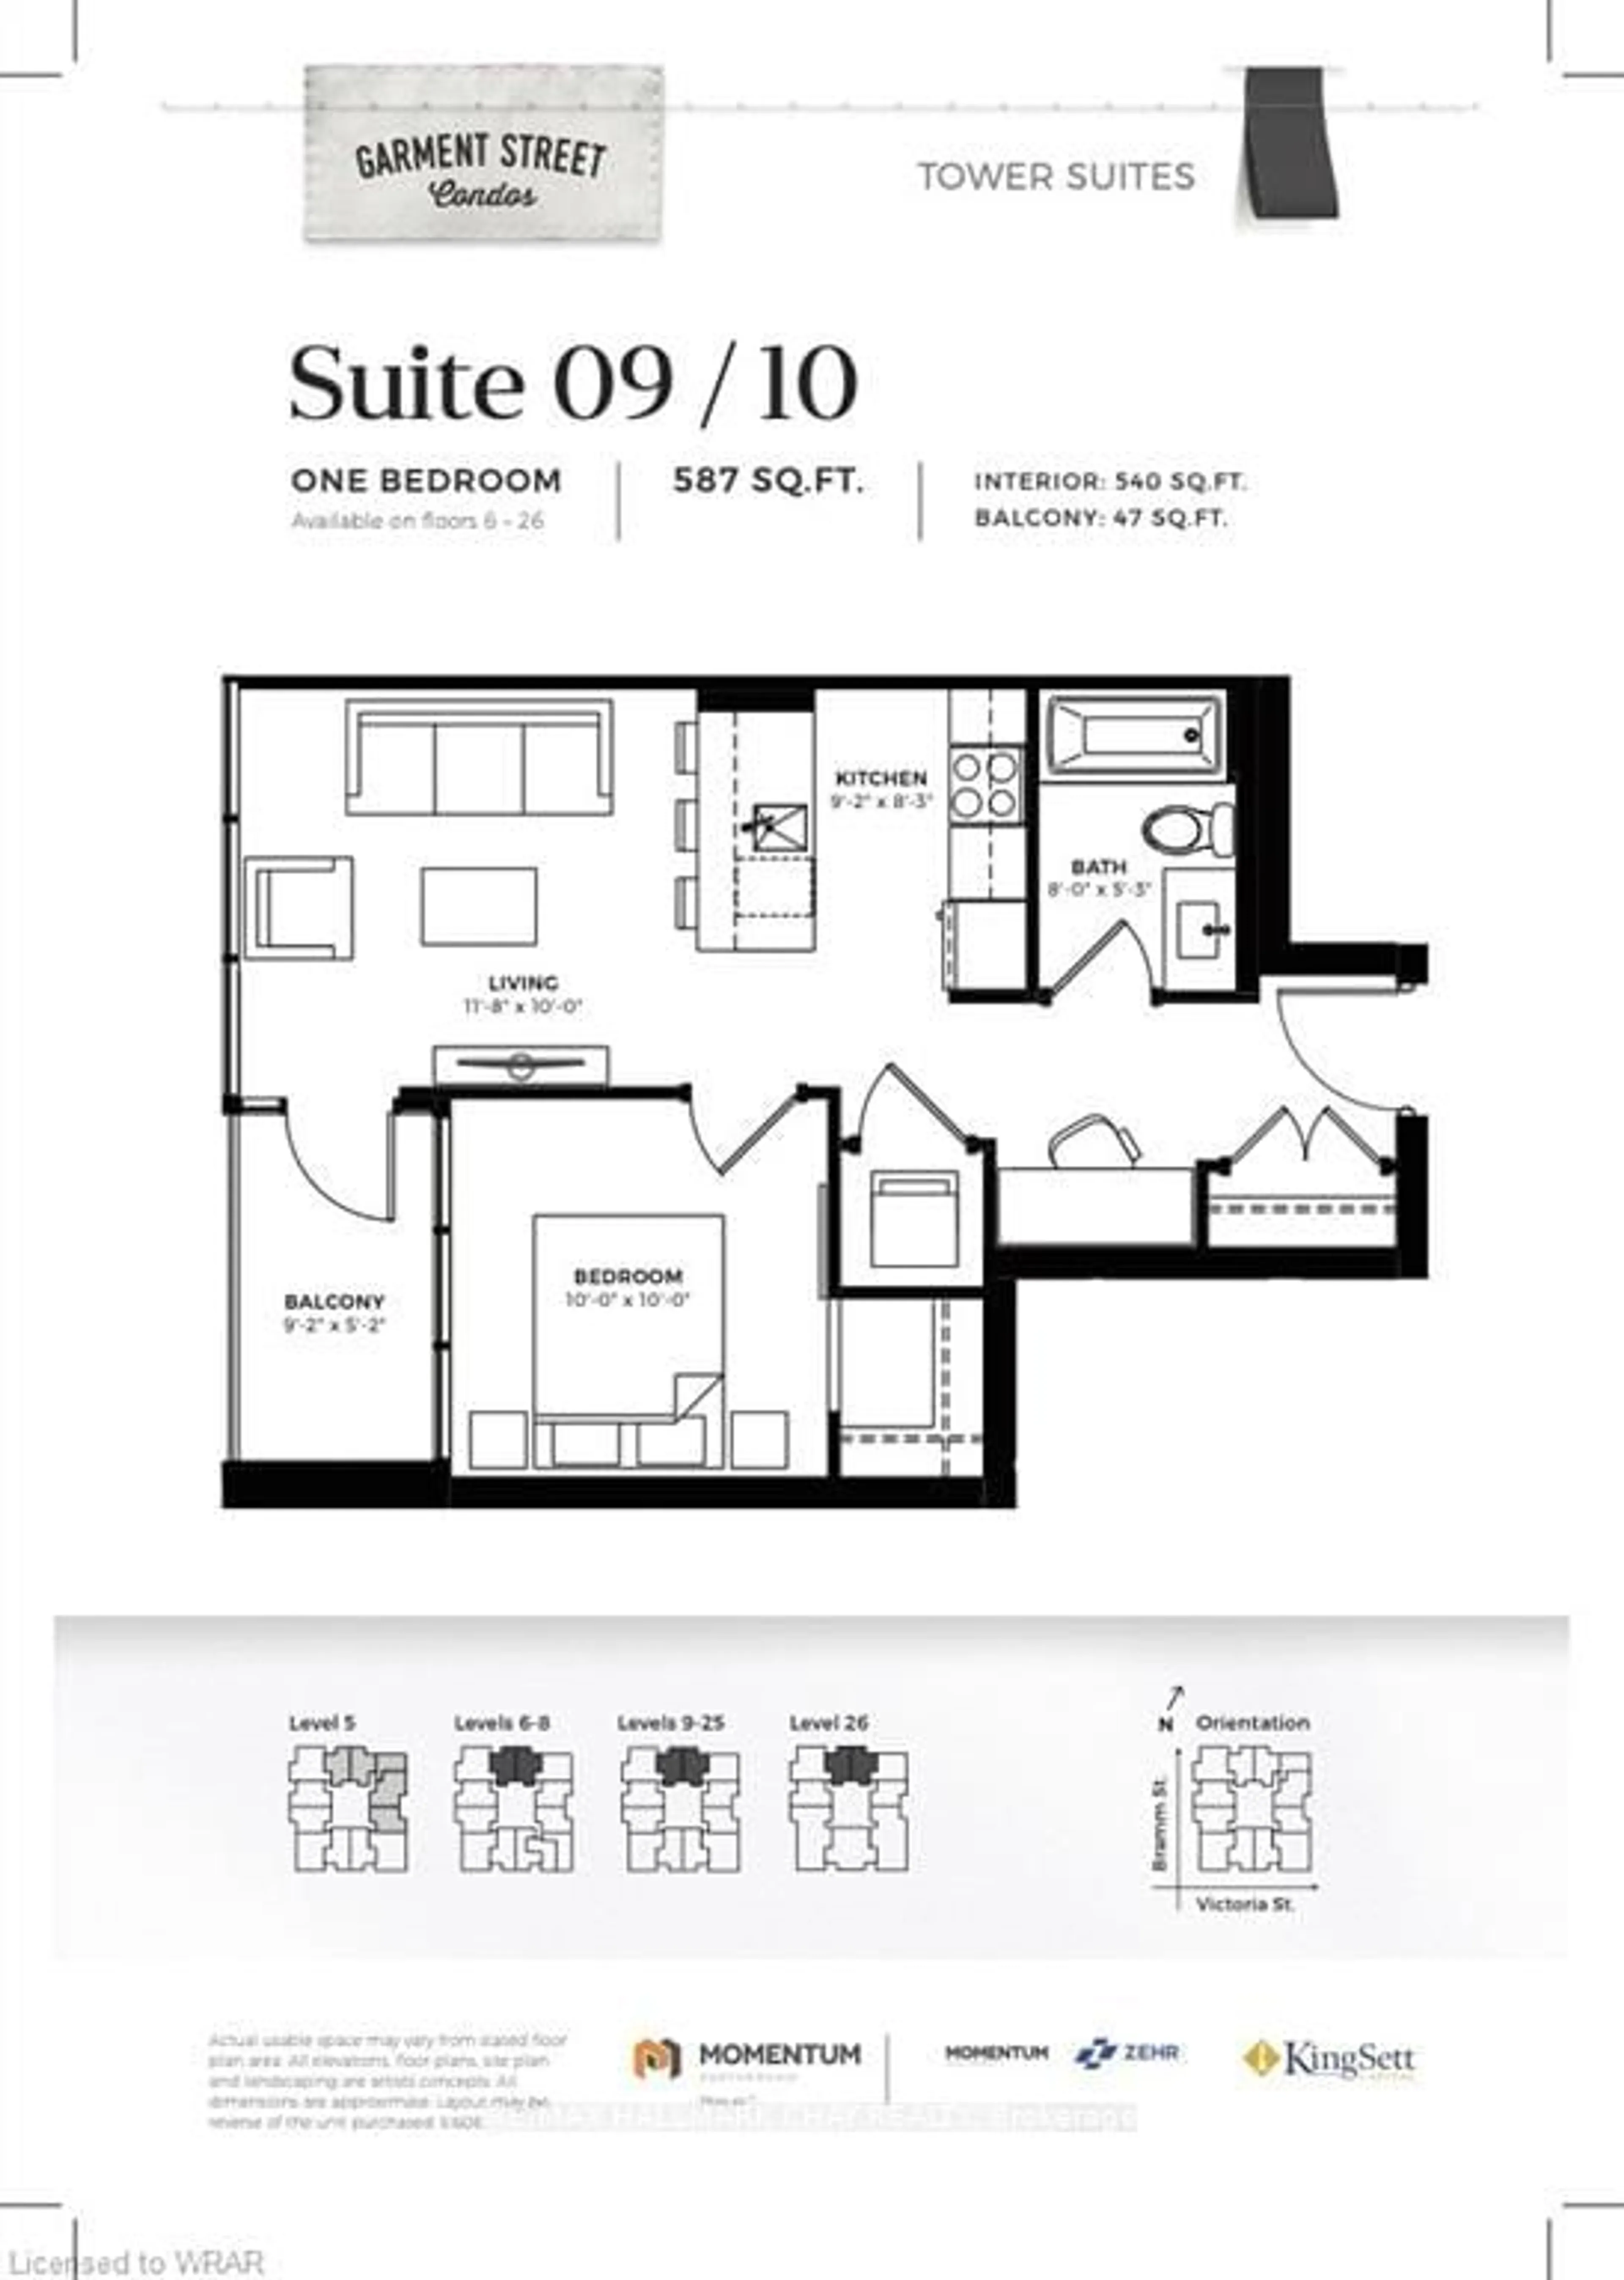 Floor plan for 108 Garment St #1709, Kitchener Ontario N2G 0E2